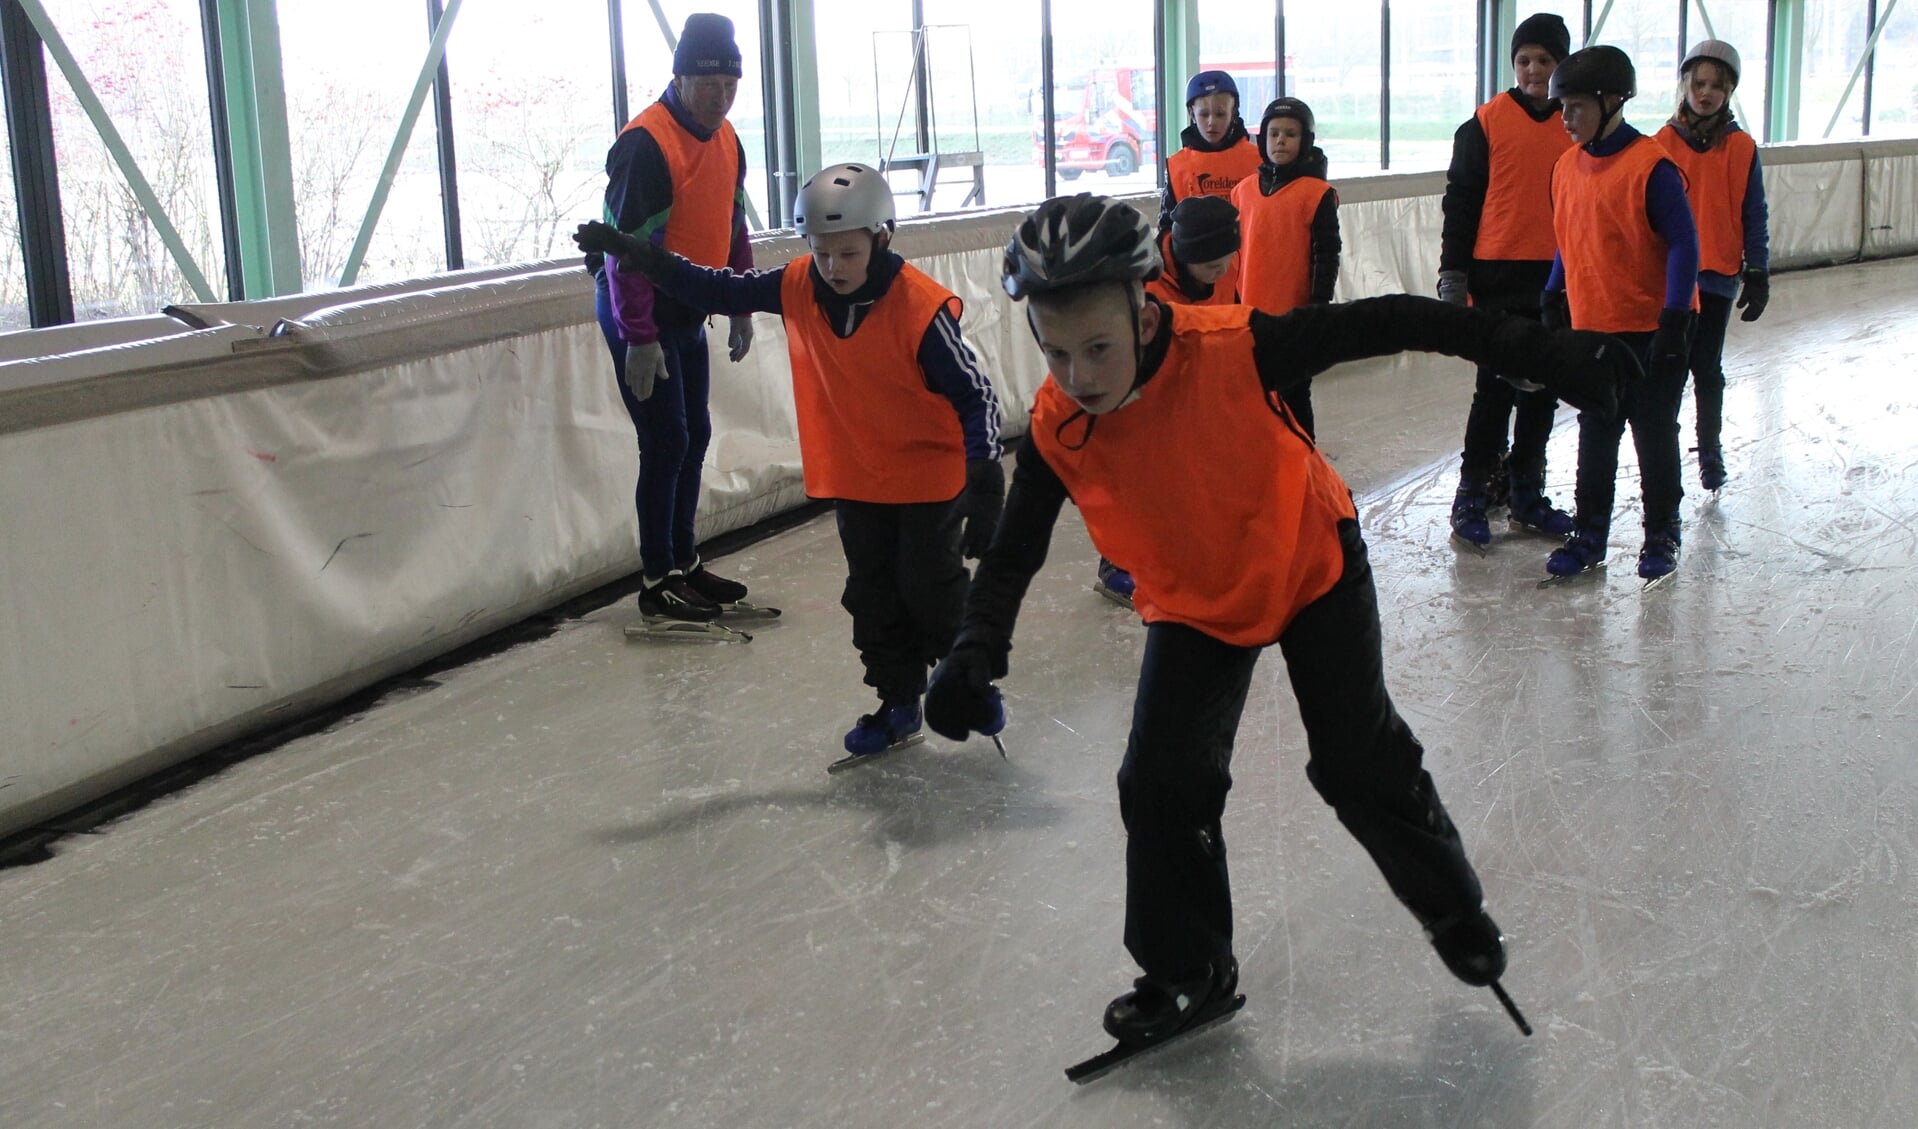 Jeugd uit Berkelland leren schaatsen. Foto: PR